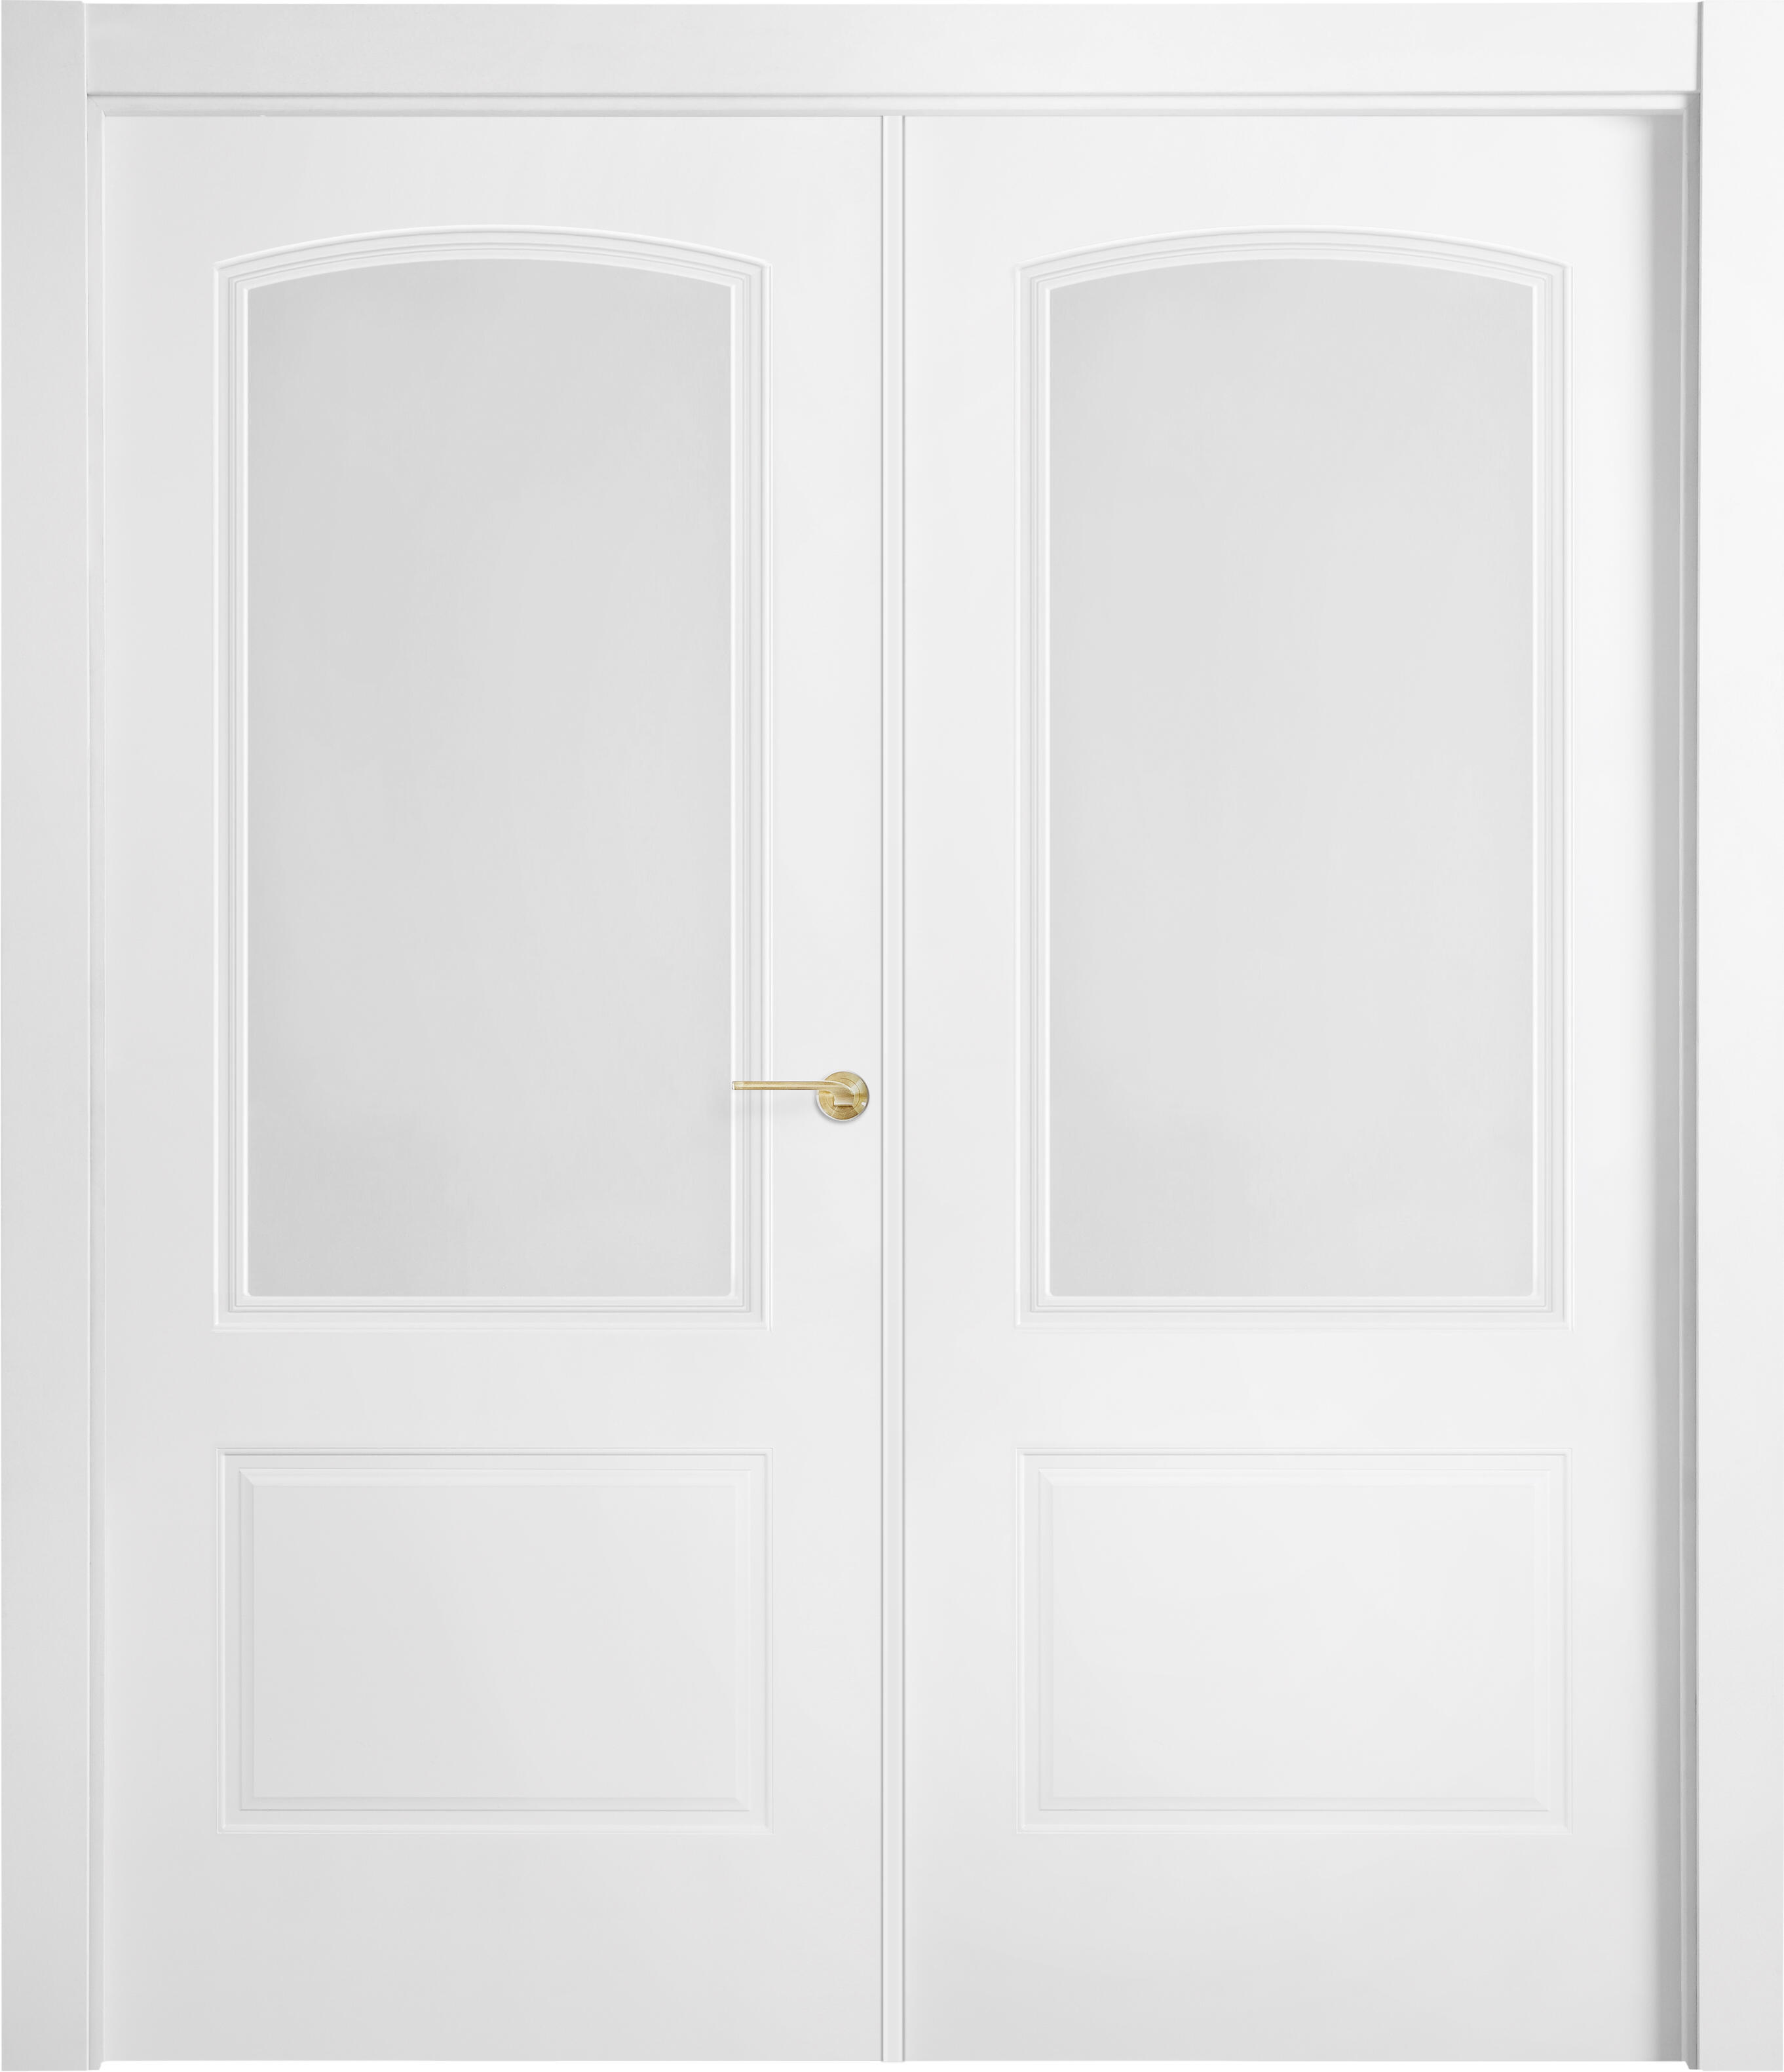 Puerta abatible berlin blanca line plus con cristal blanco derecha de 145 cm